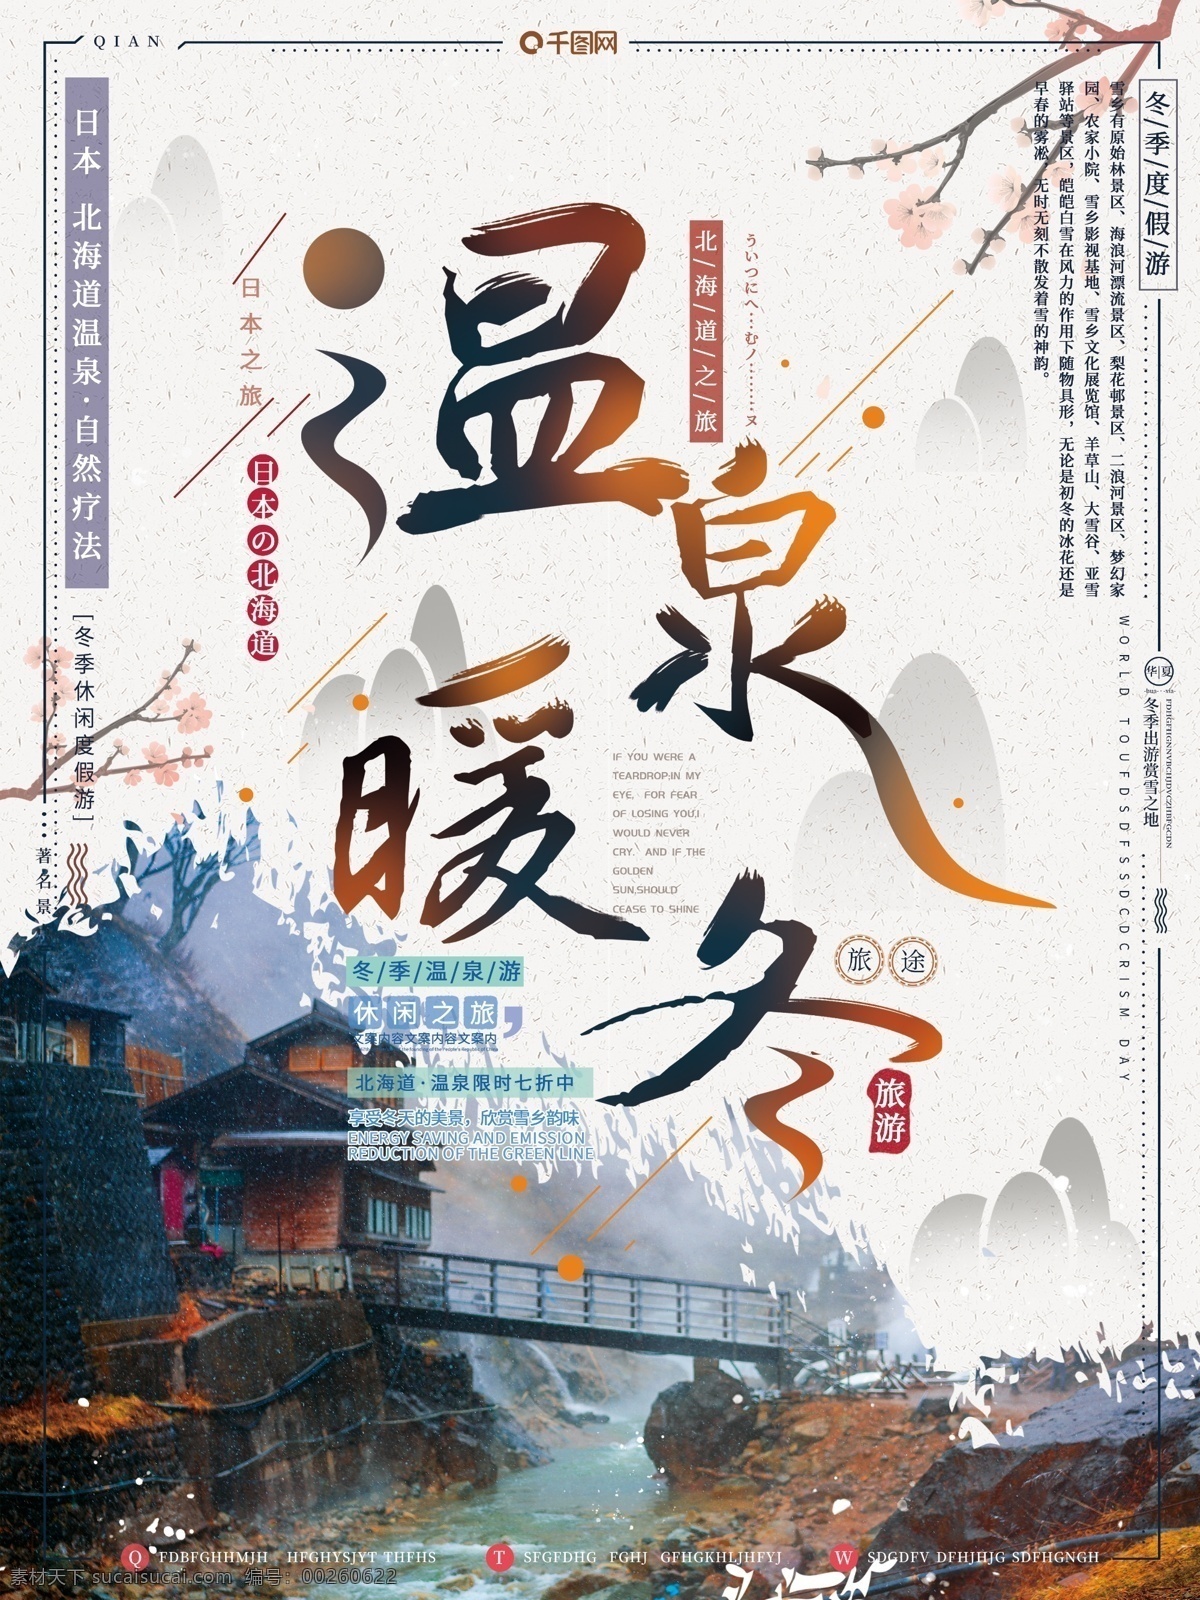 日本 北海道 温泉 暖冬 冬季 出国游 旅游 海报 温泉暖冬 冬季出国游 旅游海报